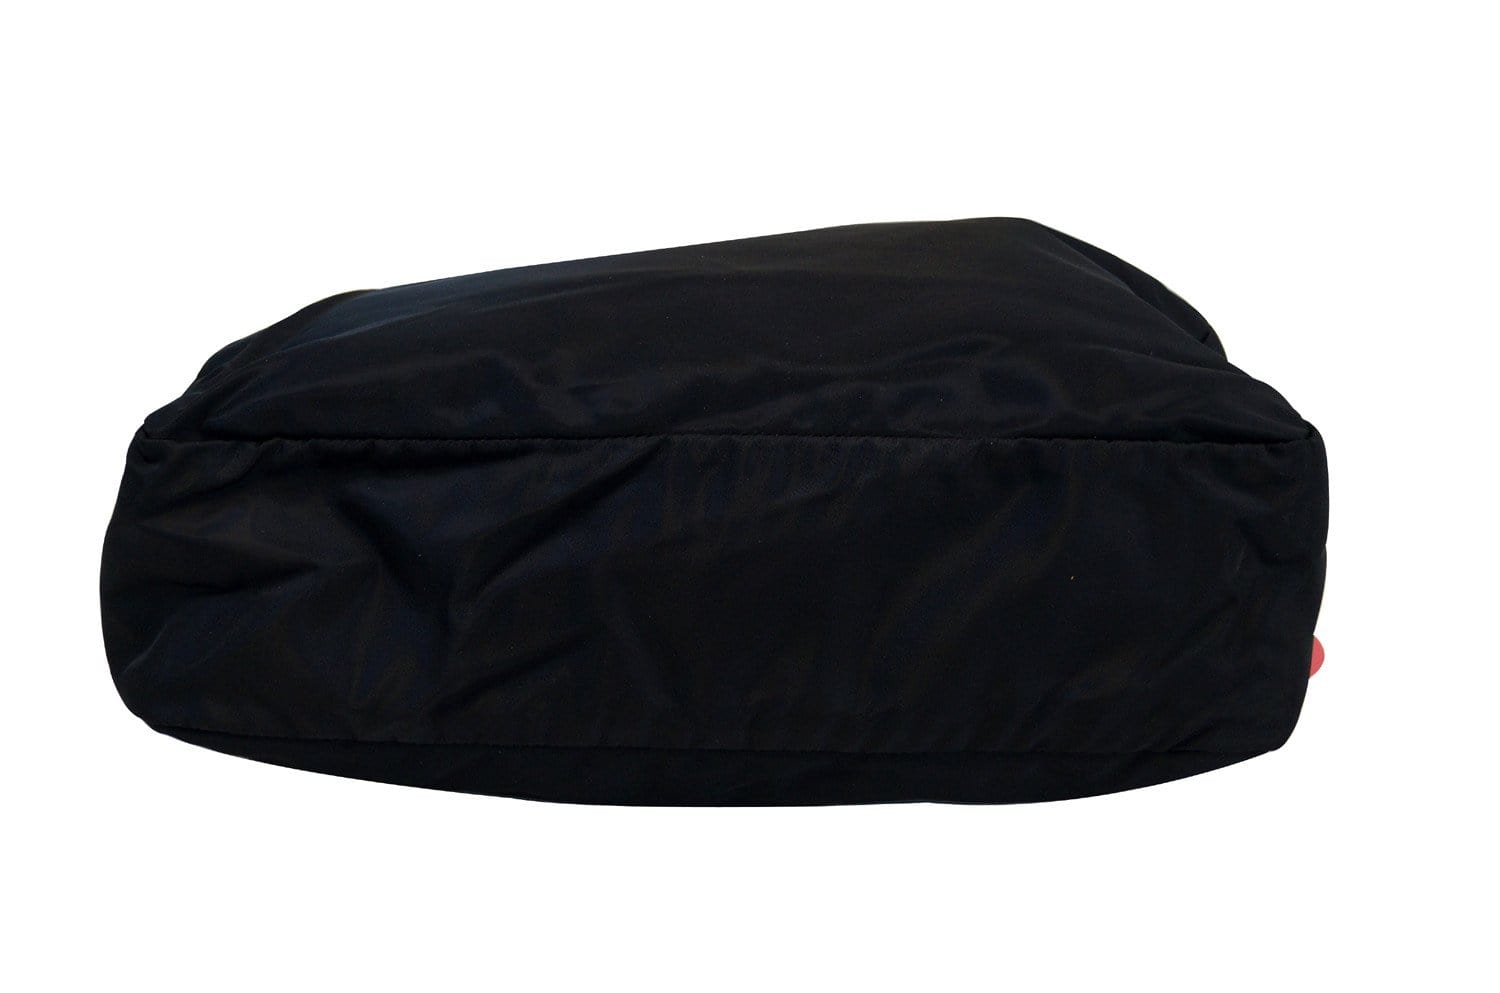 PRADA Black Nylon Tote Shoulder Bag - Final Call